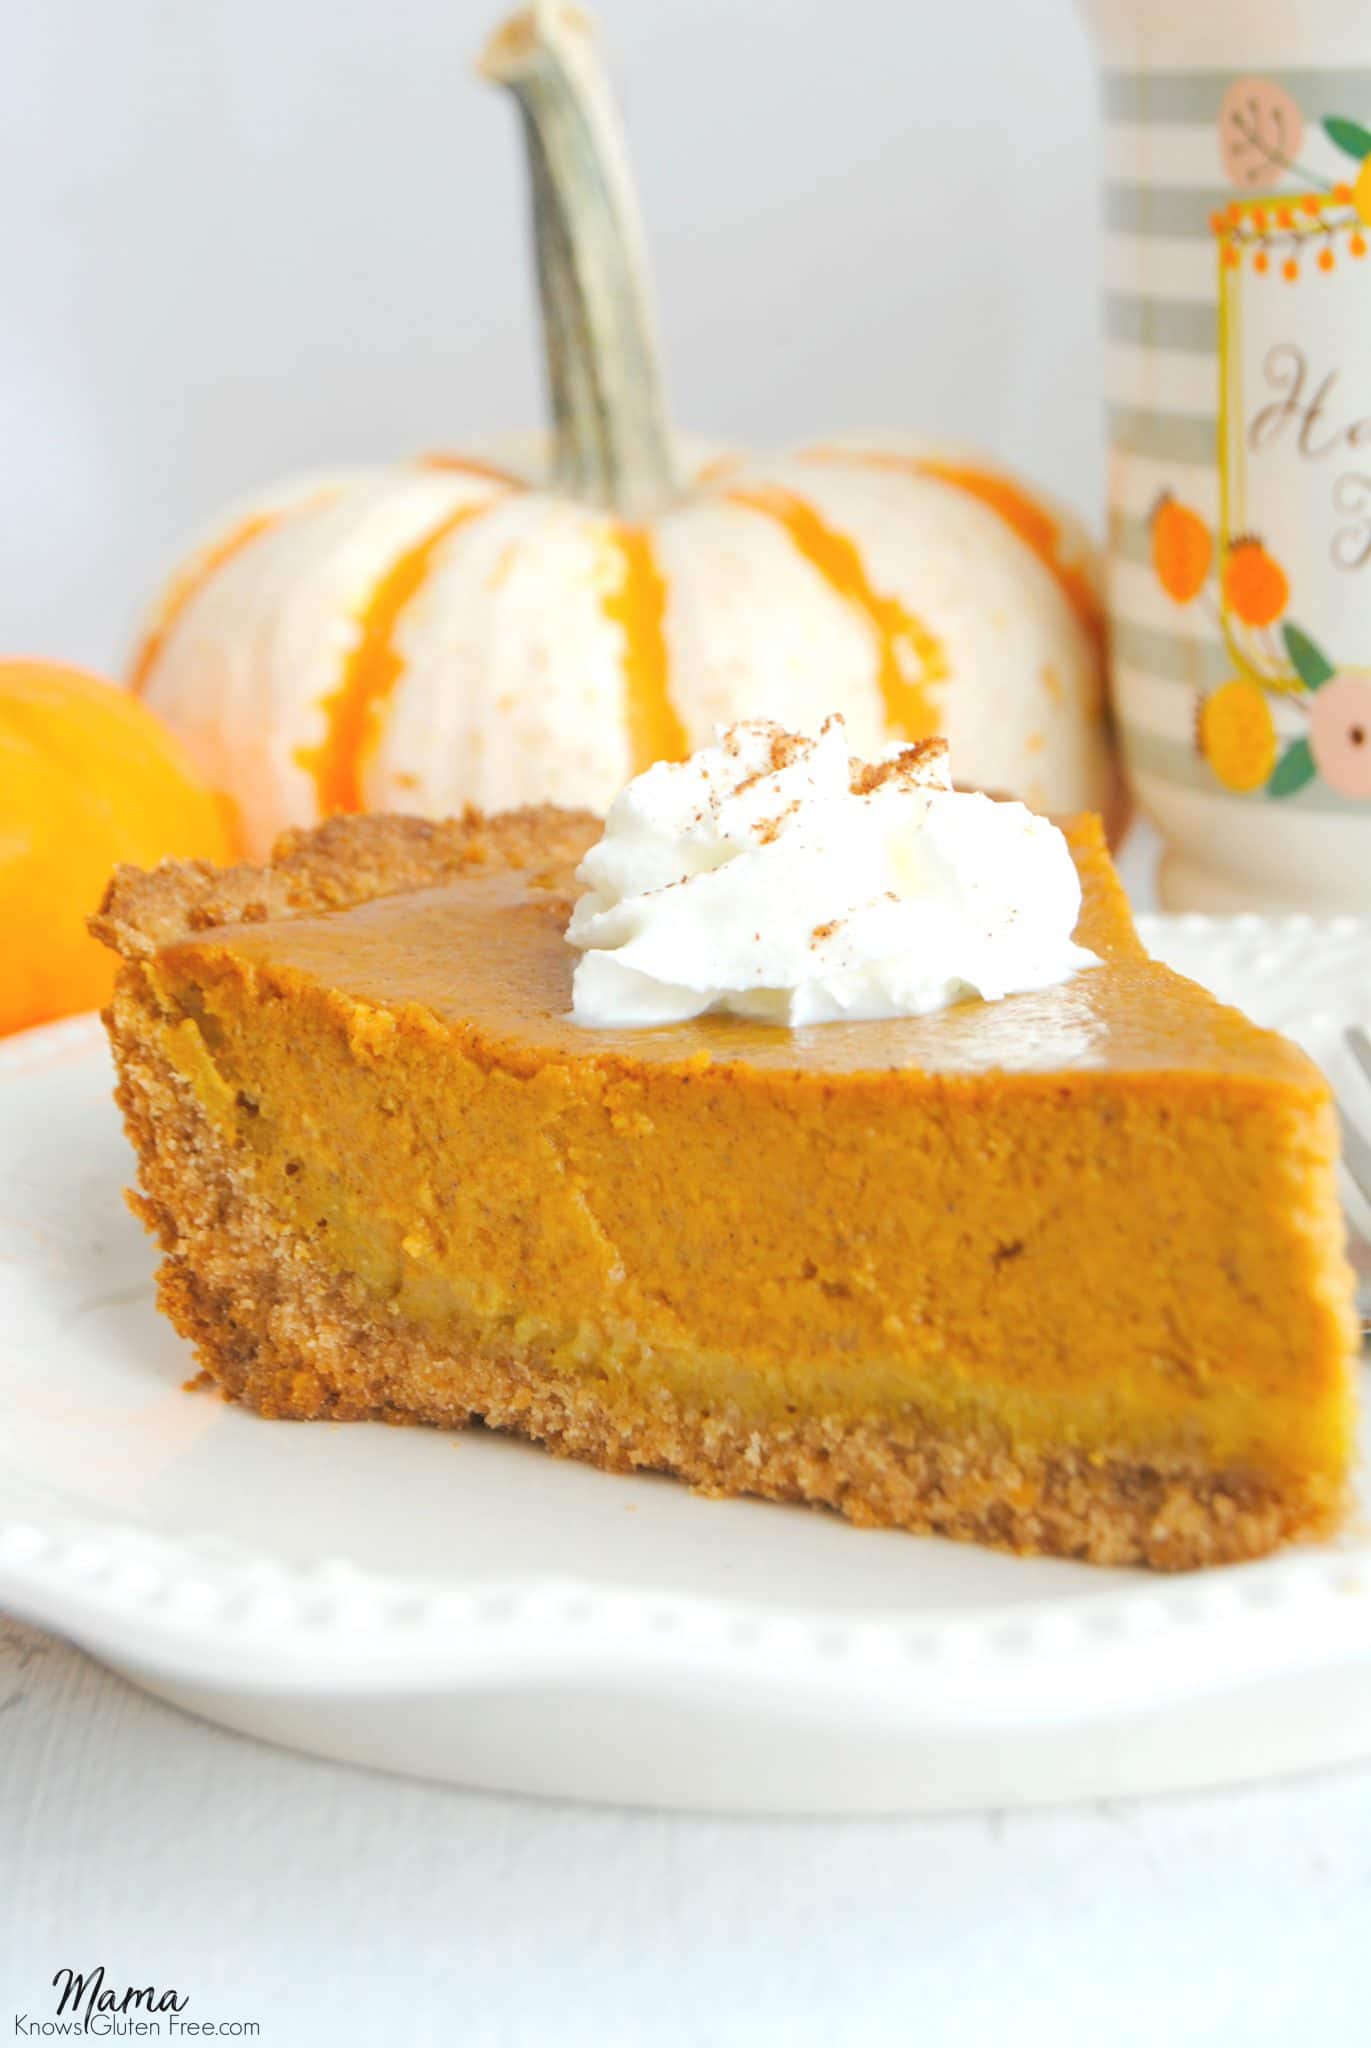 easy-gluten-free-pumpkin-pie-mama-knows-gluten-free